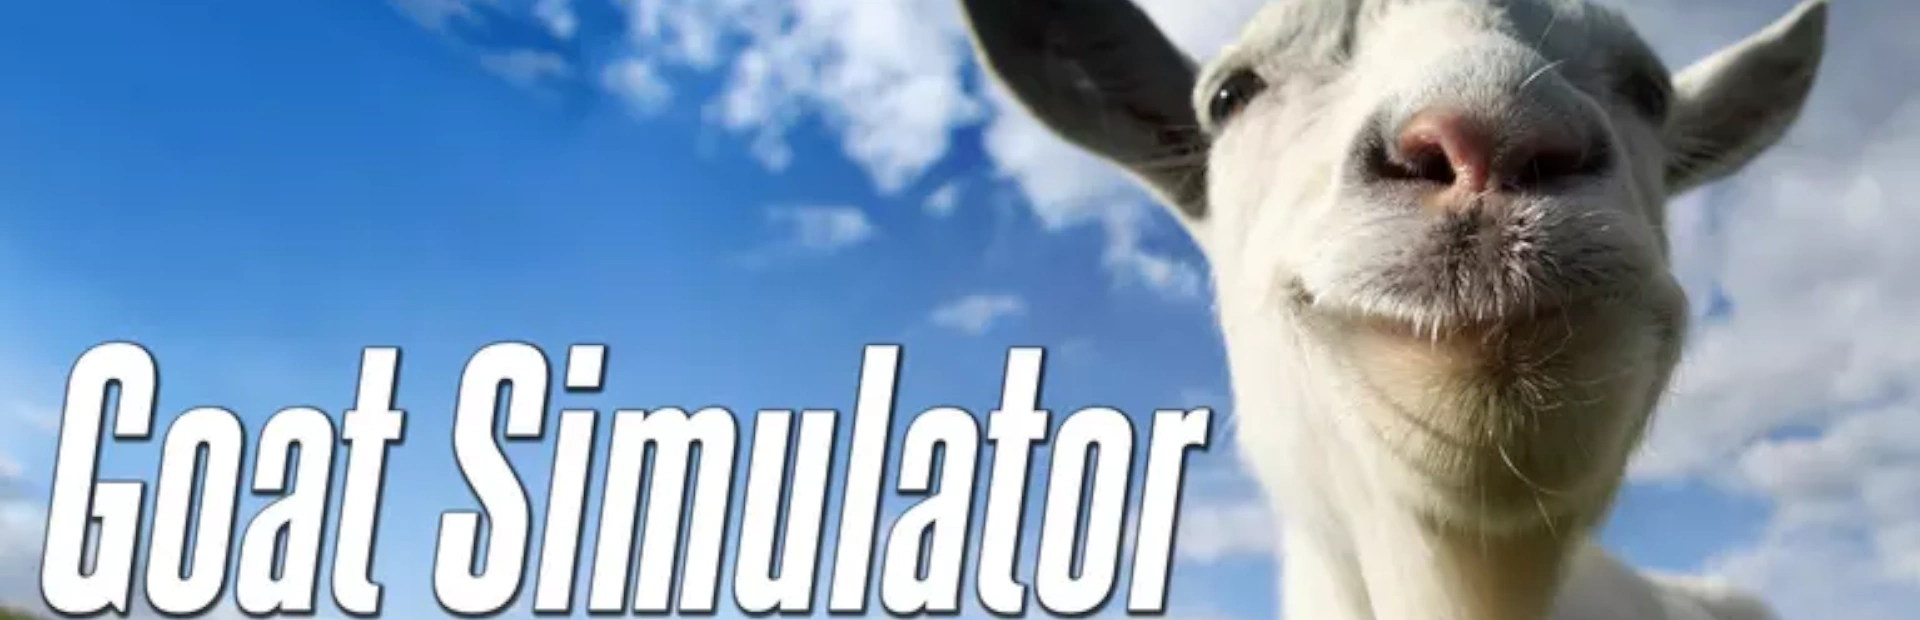 دانلود بازی Goat Simulator برای کامپیوتر | گیمباتو 